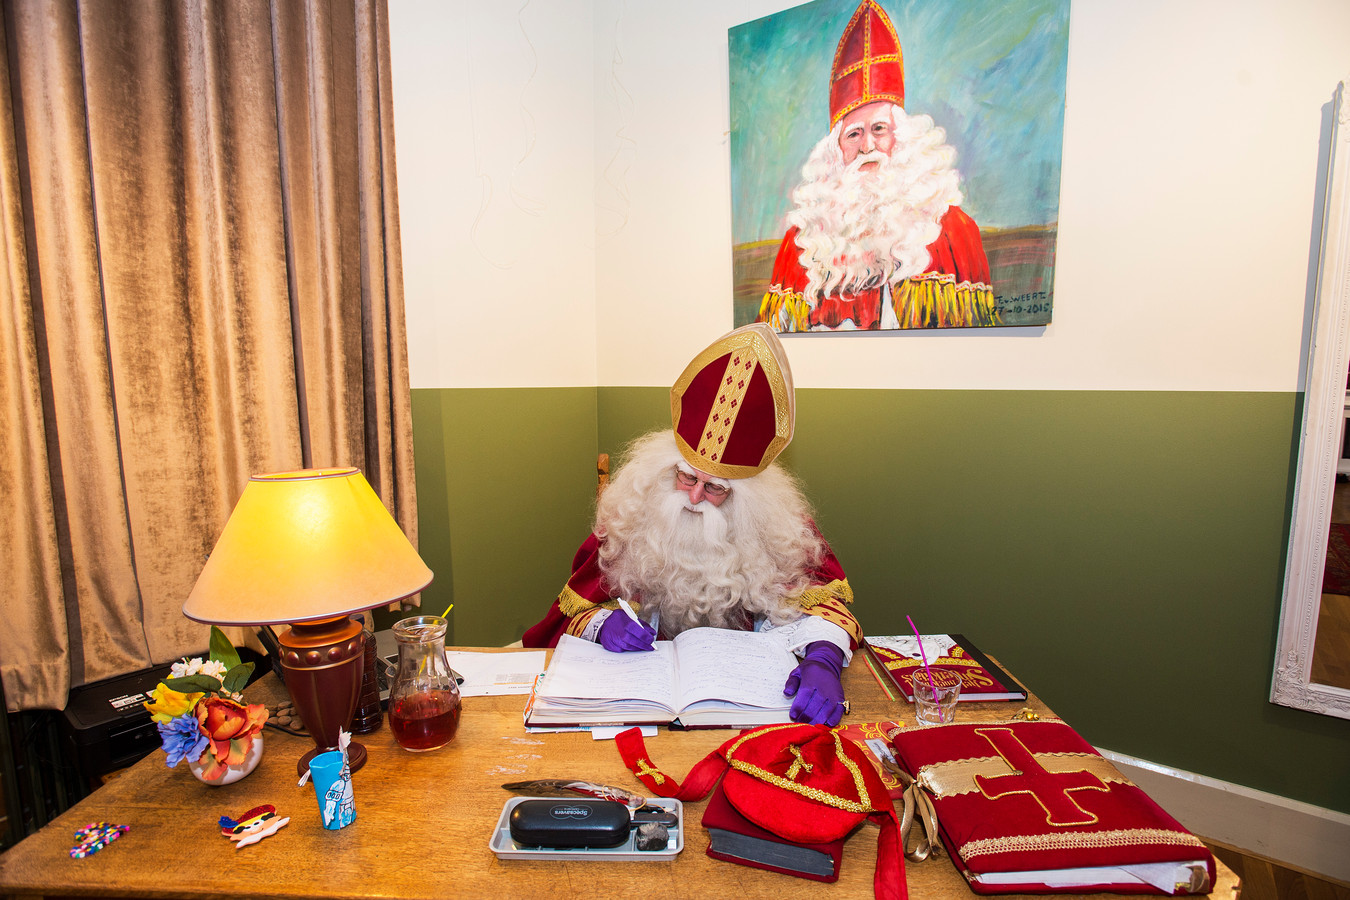 West Hoop van Bloedbad Facebook blokkeert pagina Huis van Sinterklaas in Waalwijk: 'Op de nieuwe  pagina geen Zwarte Pieten meer' | Foto | bd.nl